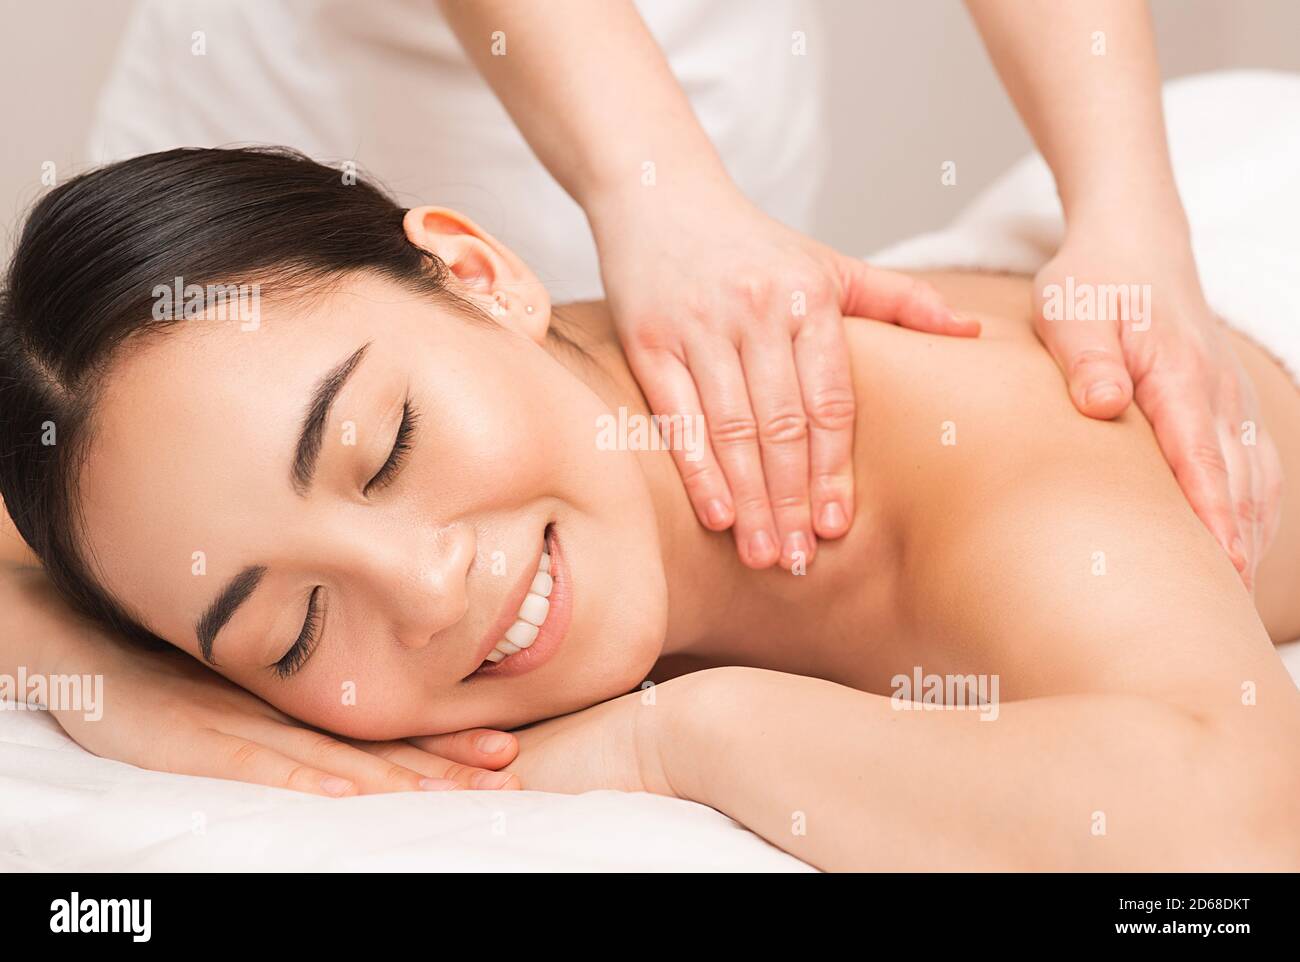 Massaggio thailandese. Ritratto donna asiatica che si gode un massaggio alla schiena presso la spa. Foto Stock